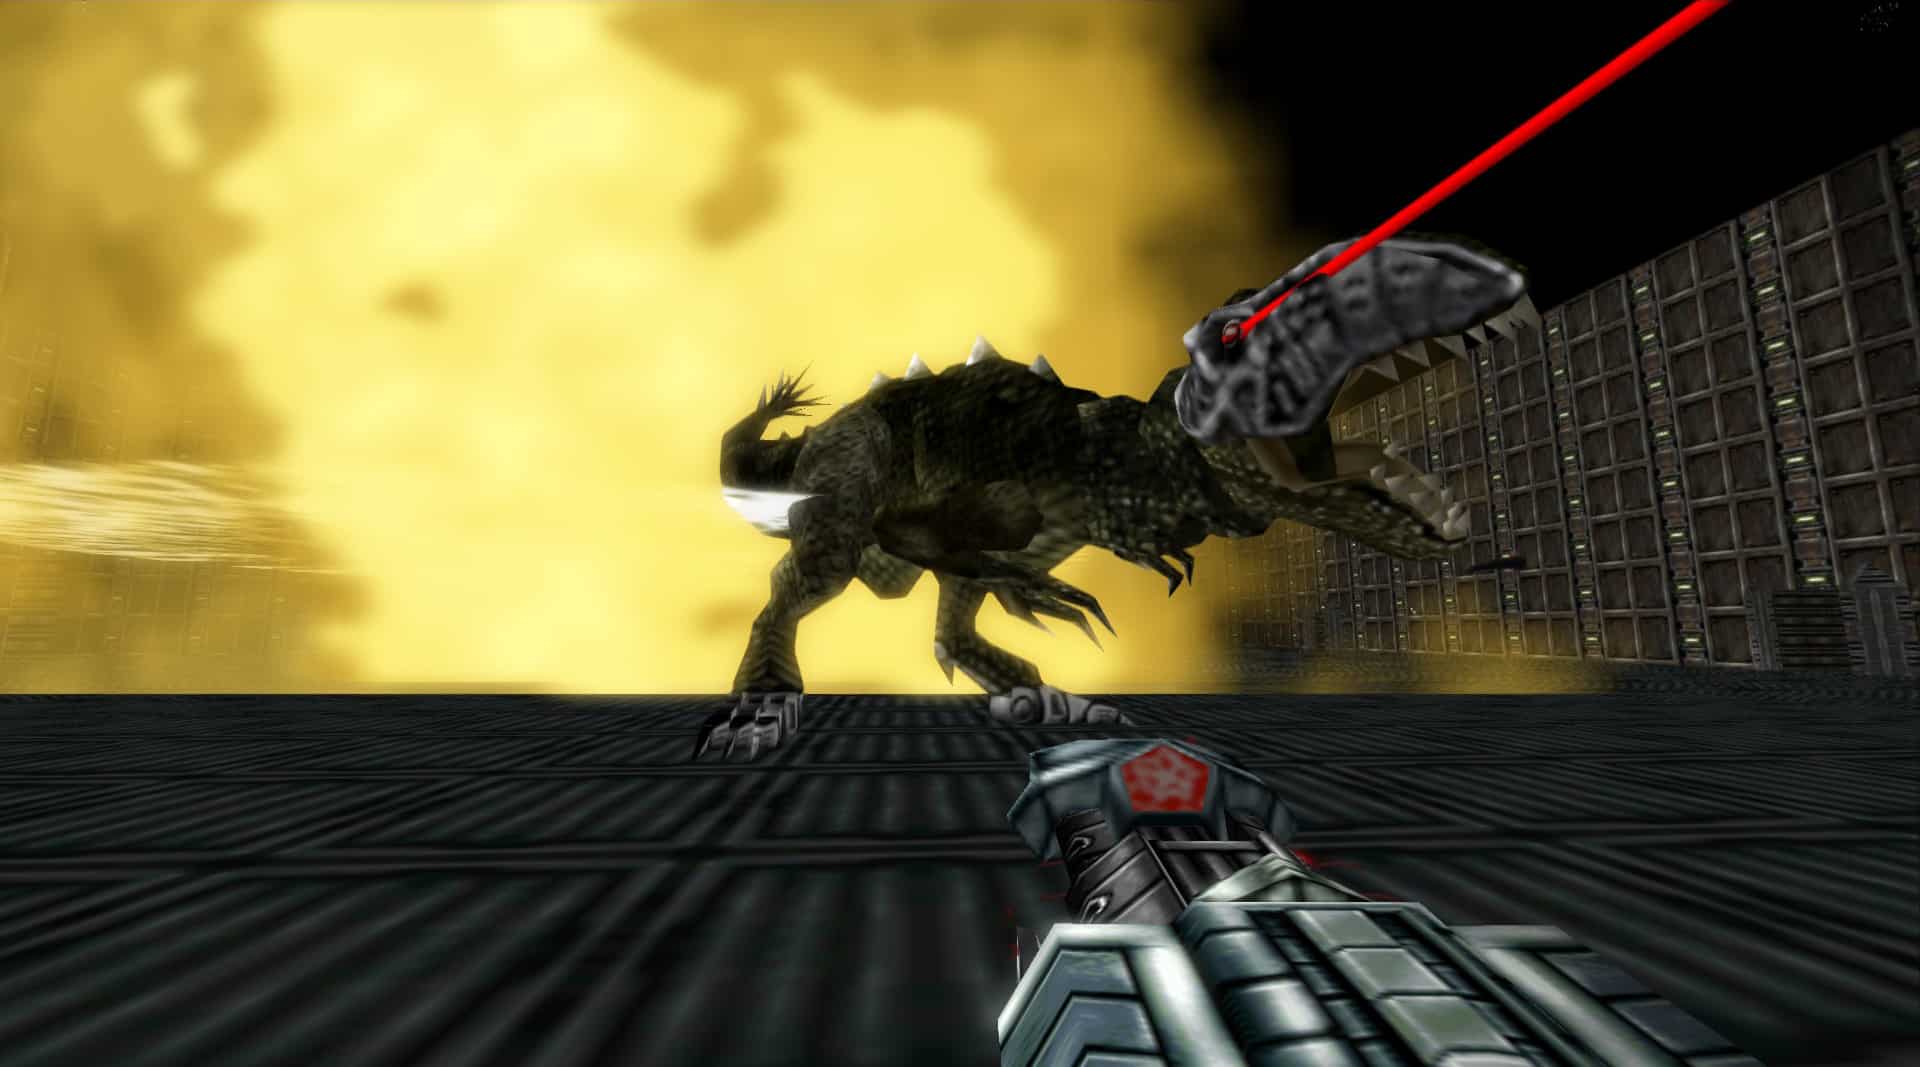 Turok 1 Remake Trex Boss Thunder Bionosaur Gameplay Screenshot